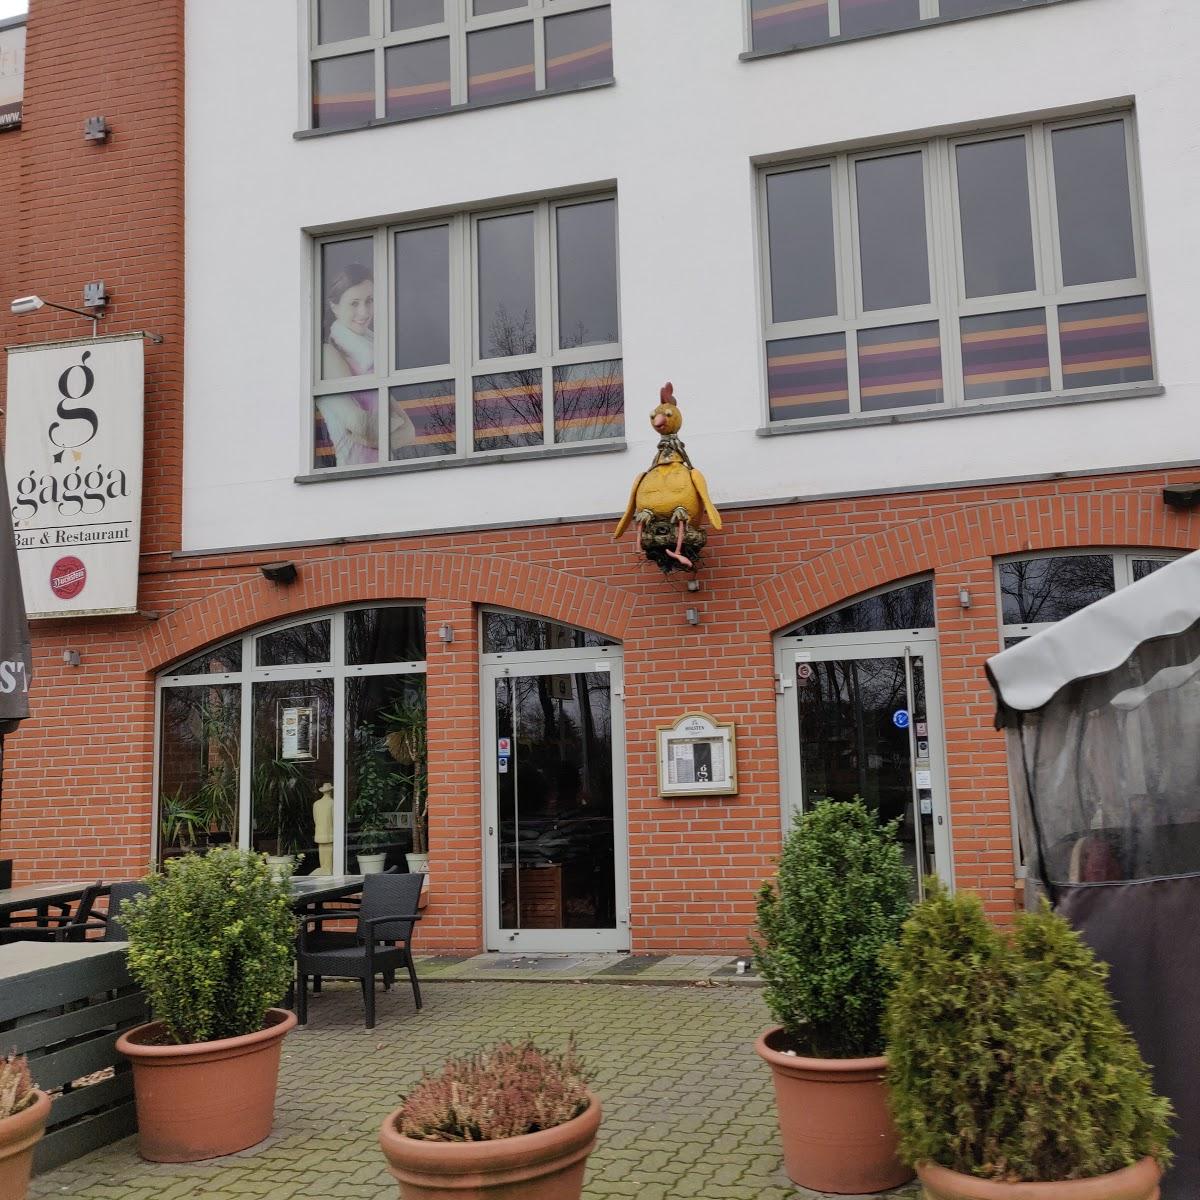 Restaurant "Gagga Restaurant und Bar" in  Schenefeld